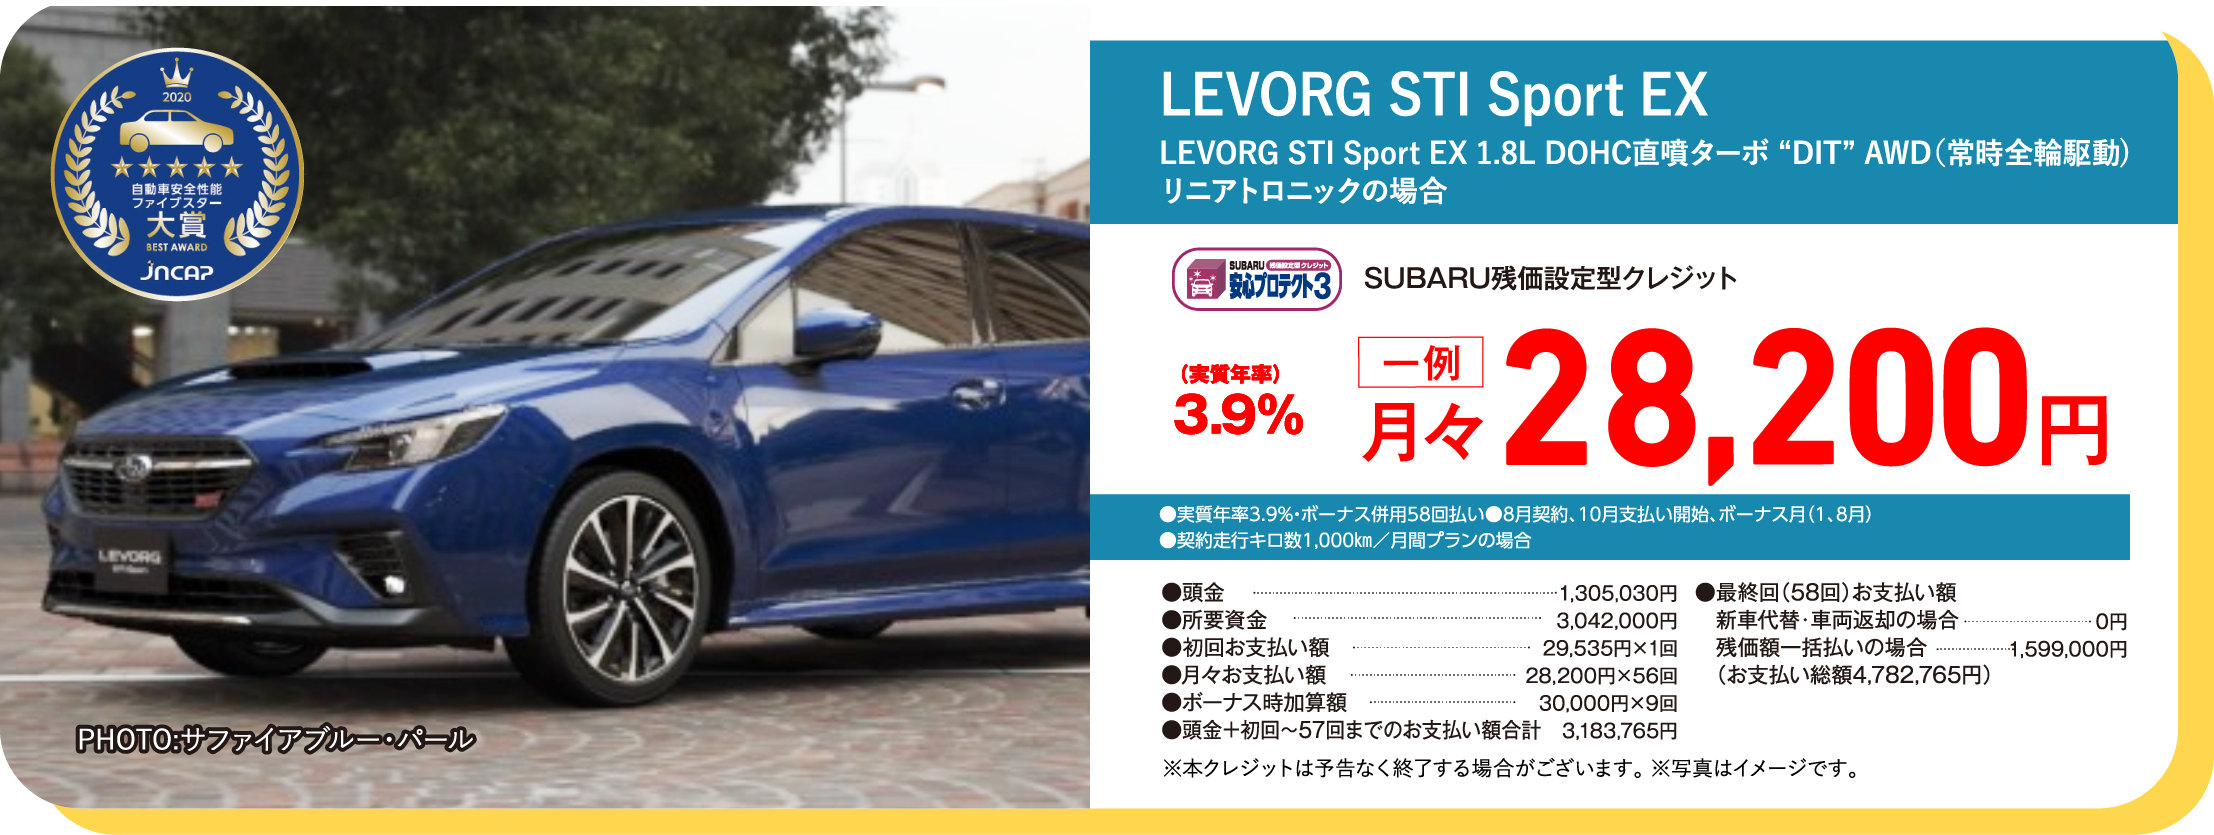  LEVORG STI Sport EX LEVORG STI Sport EX 1.8L DOHC直噴ターボ “DIT” AWD（常時全輪駆動)リニアトロニックの場合